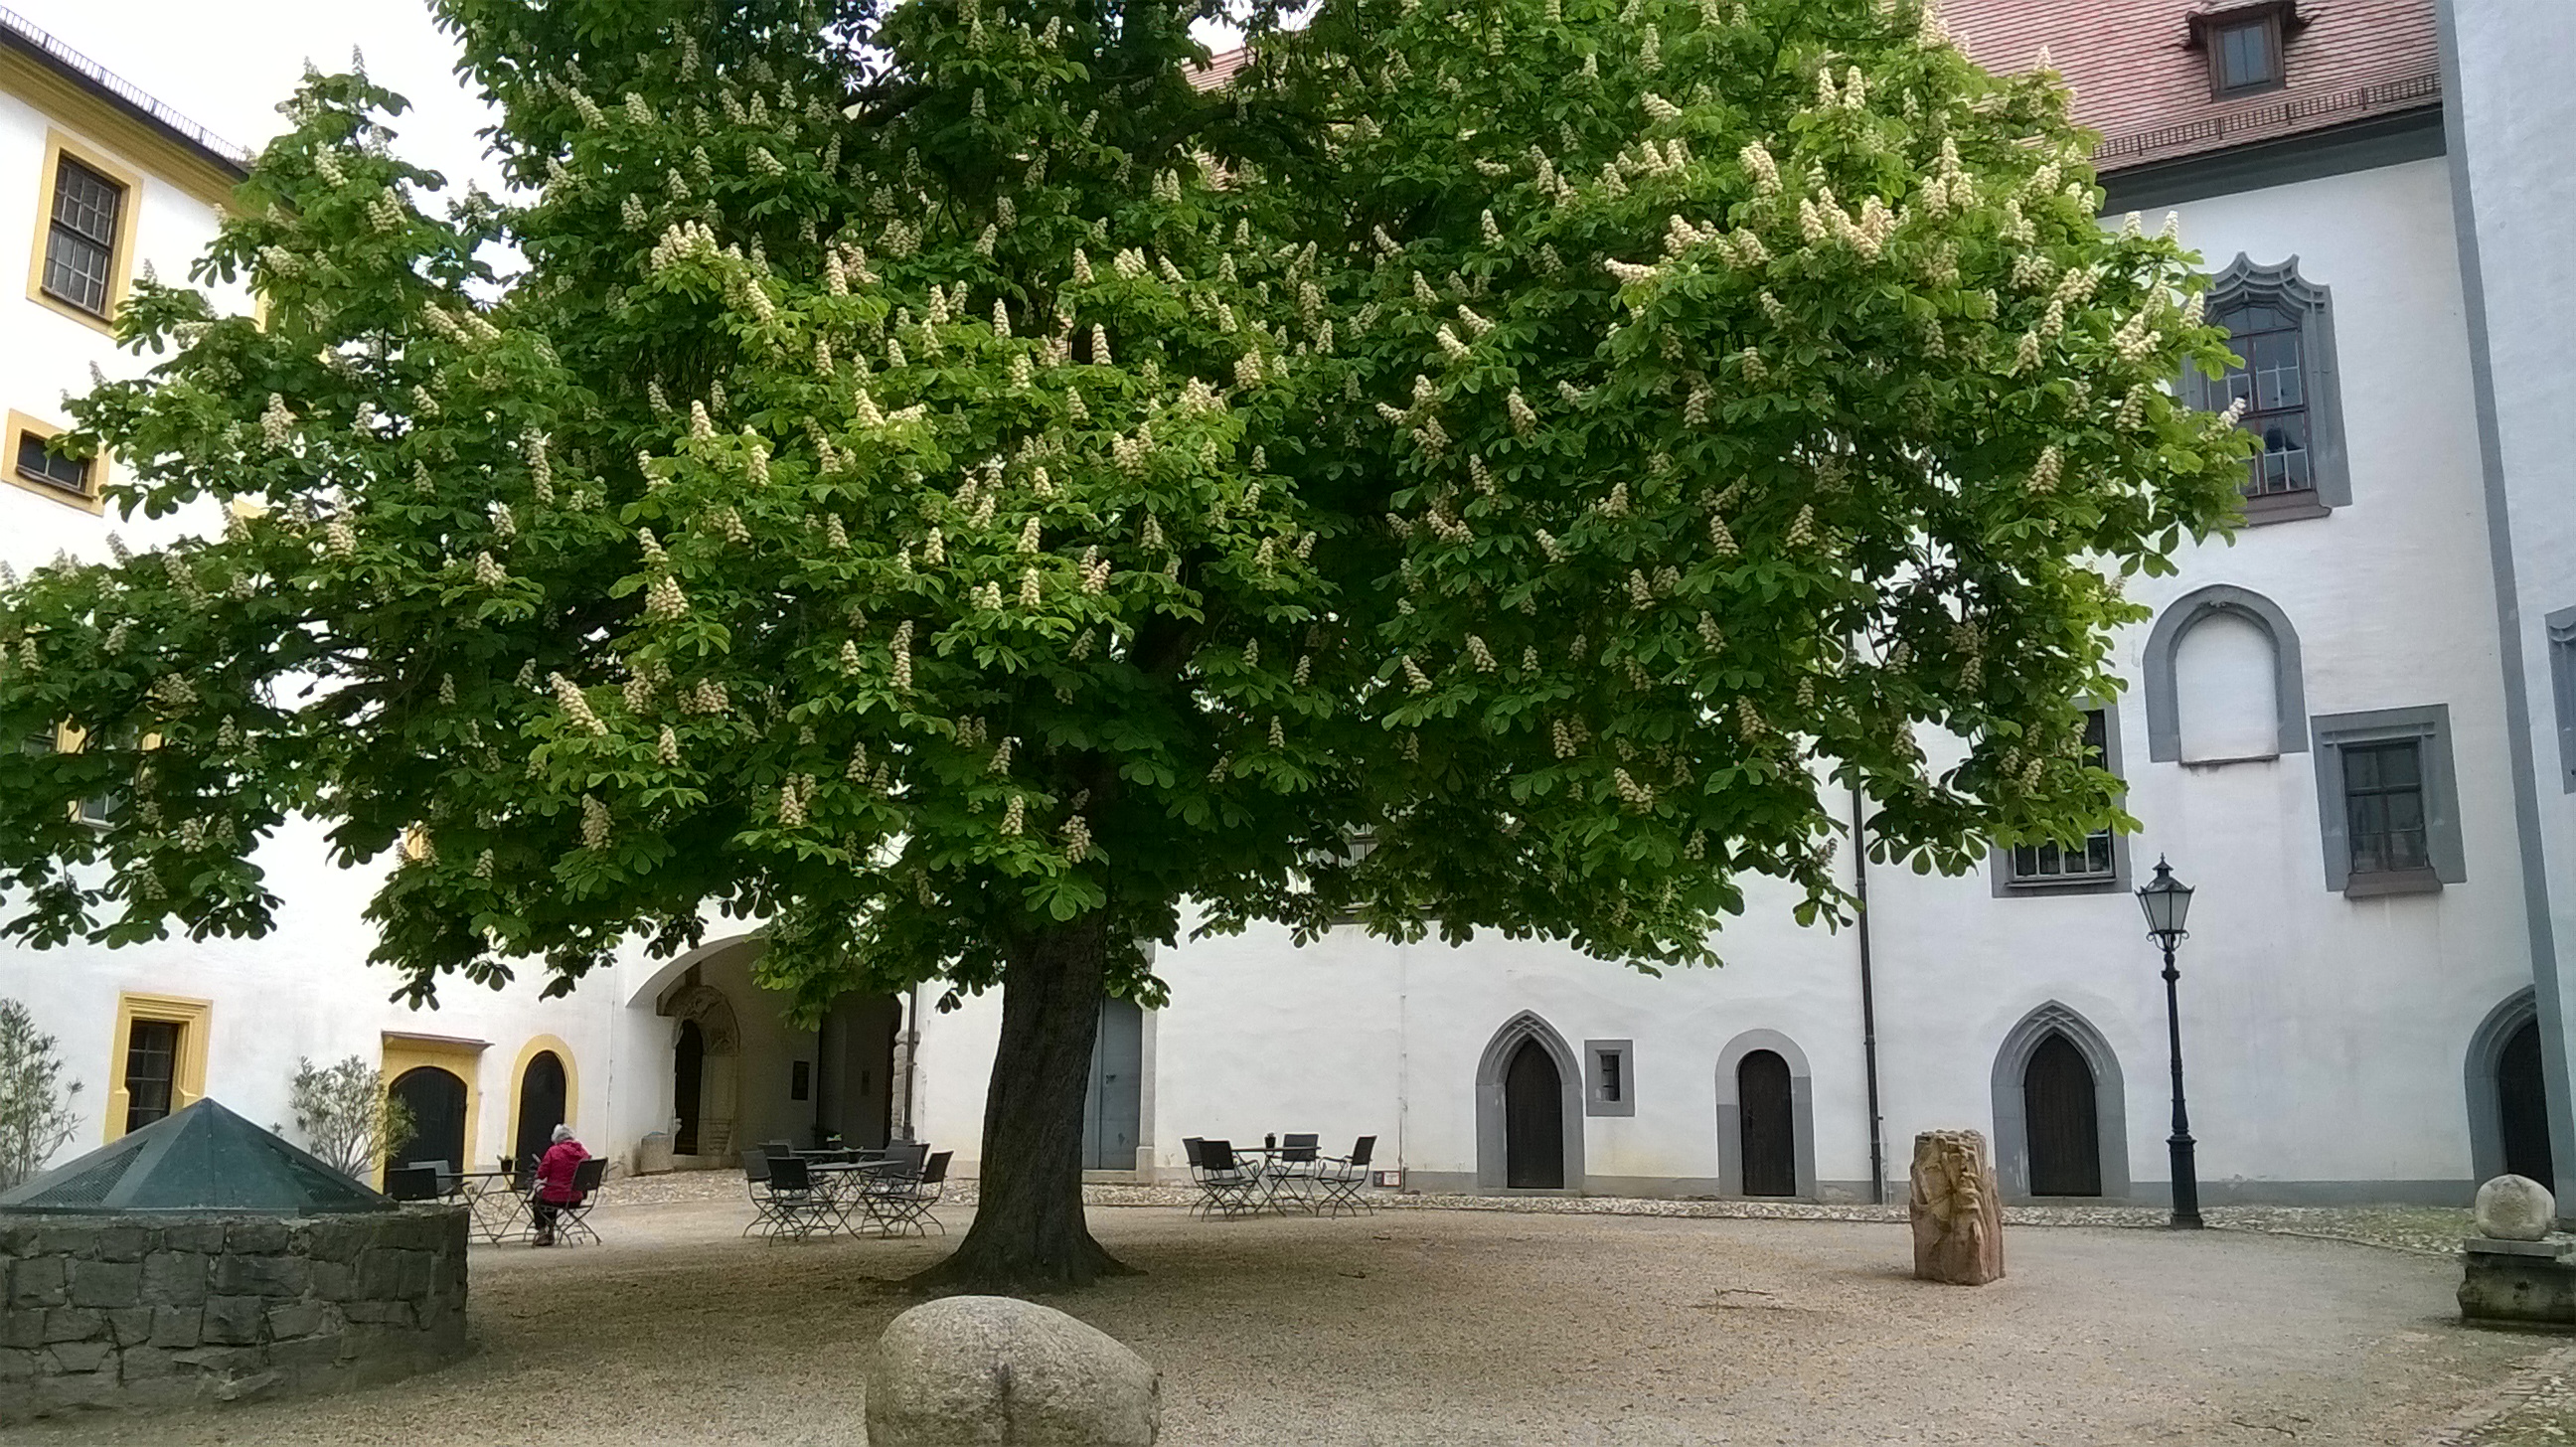 Foto eines riesigen, weiß blühenden Kastanienbaums in einem historischen Schlosshof. Die Mauern des Schlosses im Hintergrund sind weiß getüncht. Neben dem Baum steht ein Brunnen.